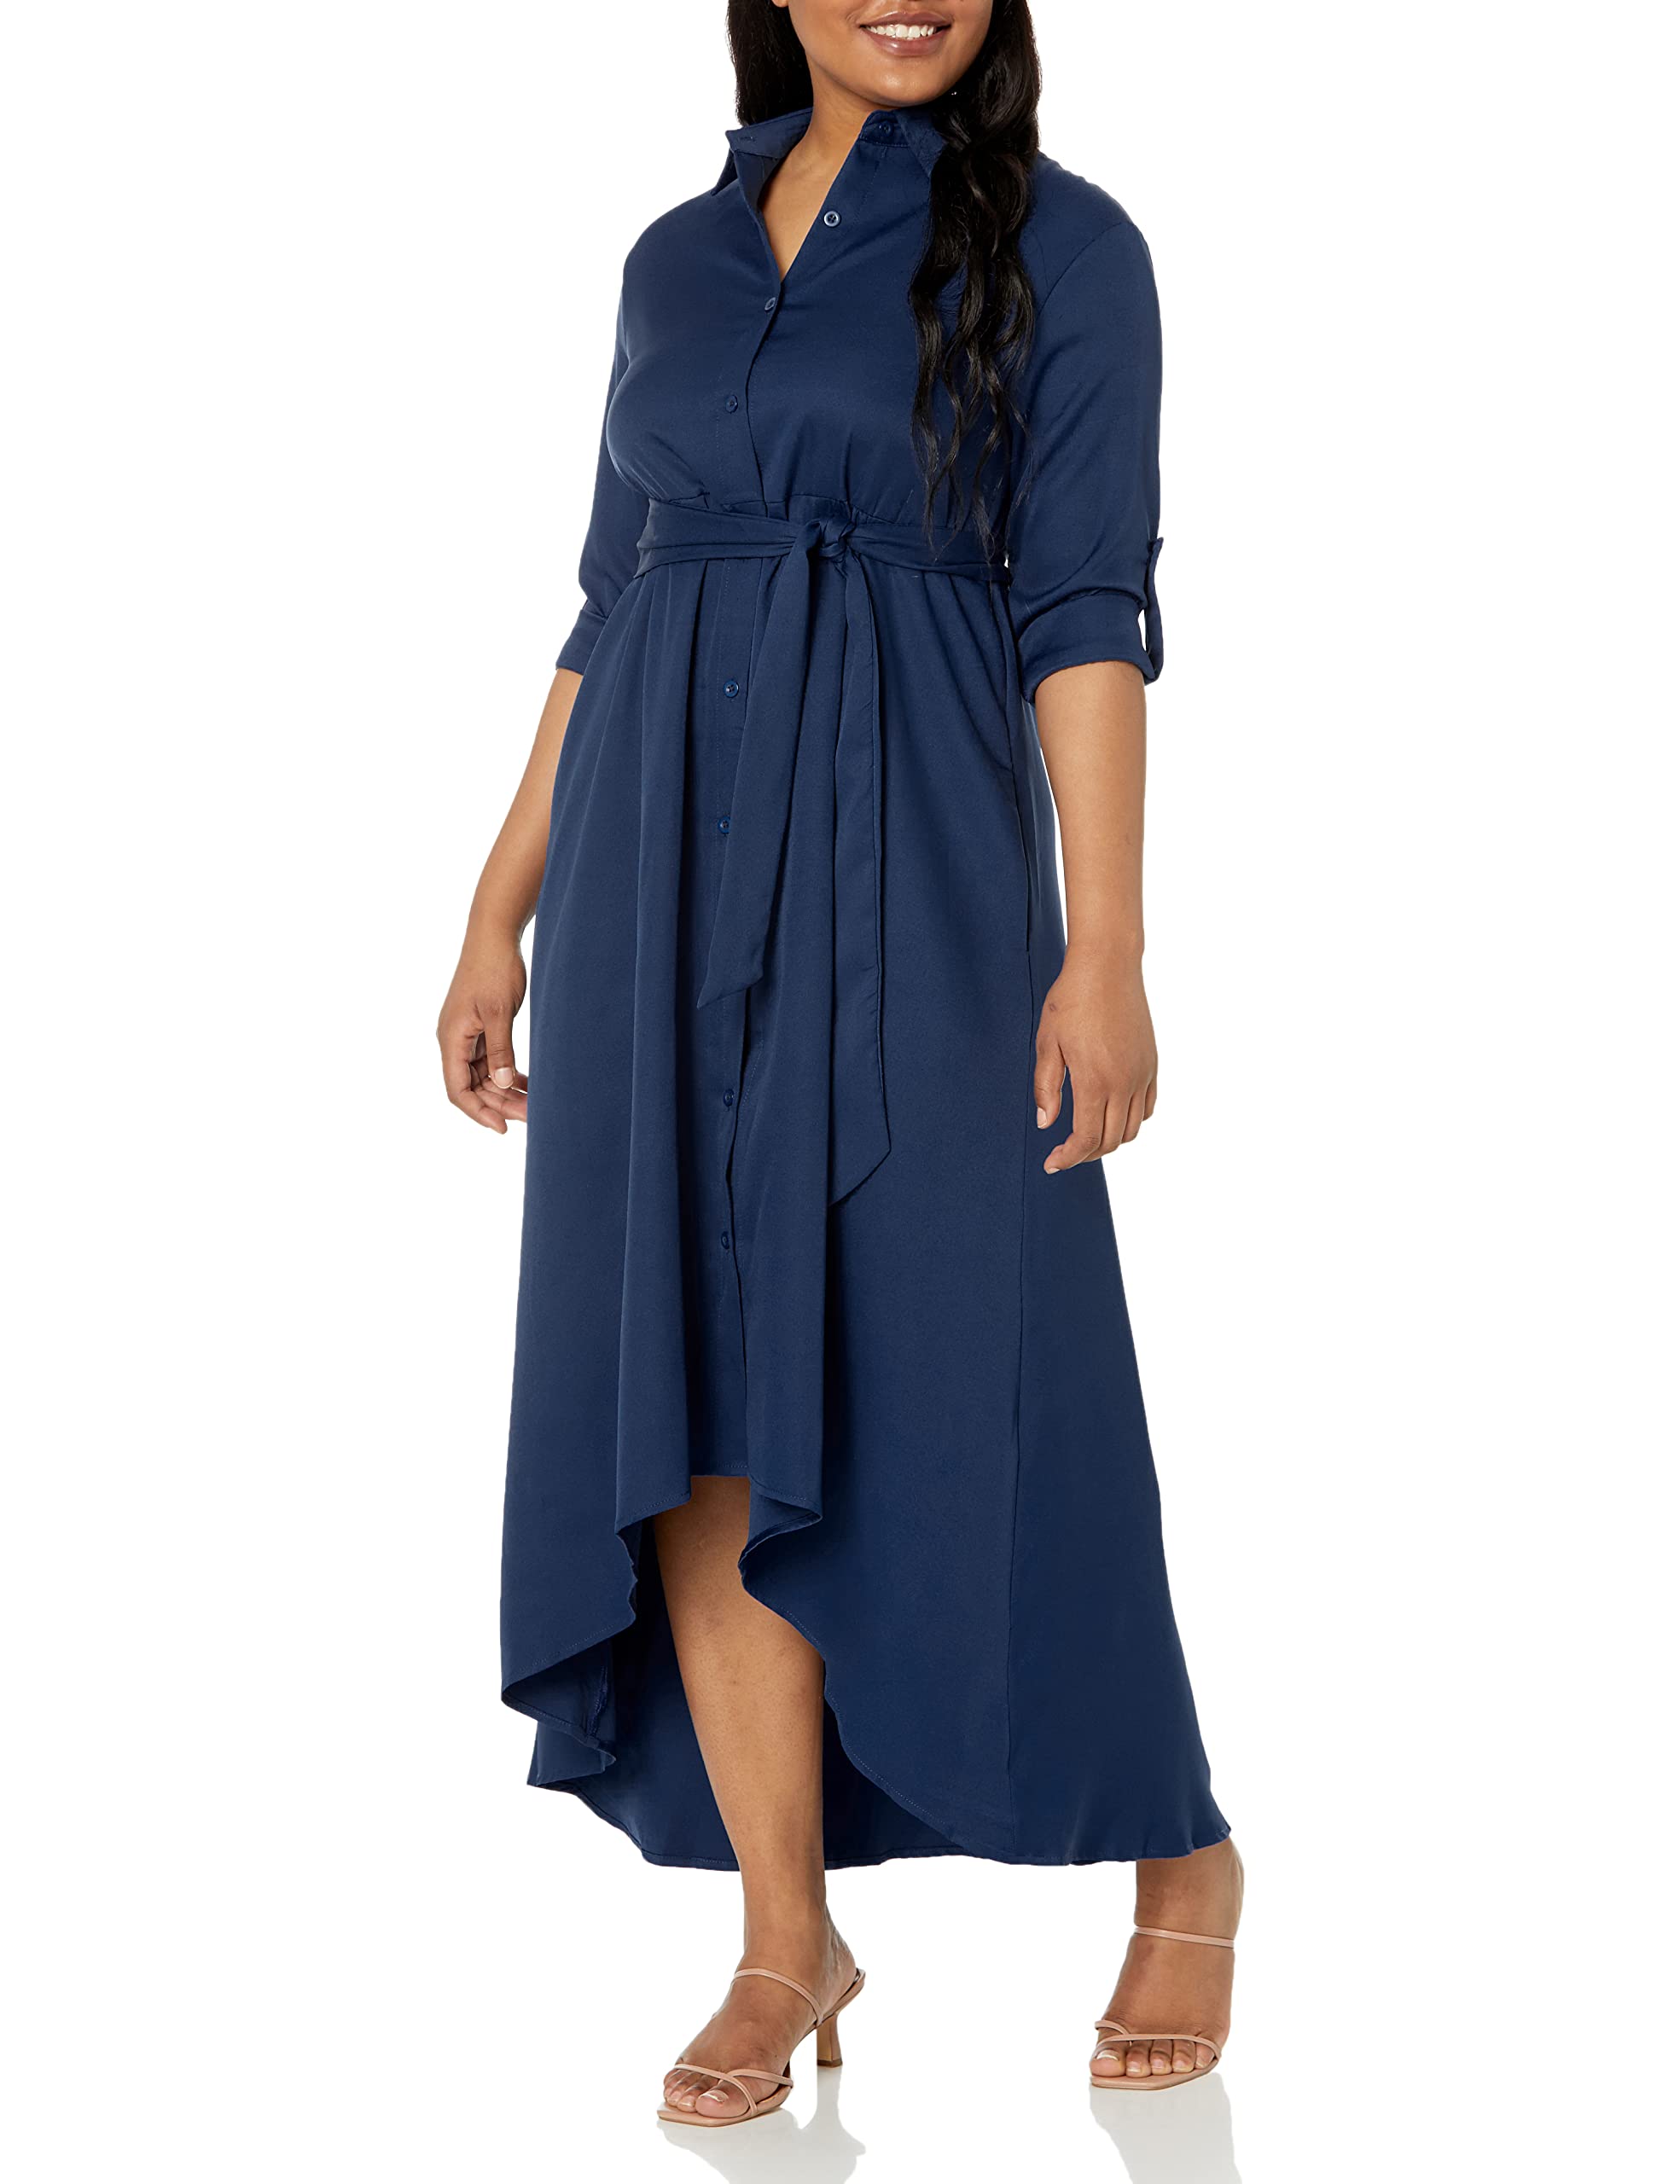 VERWIN Damen-Maxikleid, langaermelig, locker, elegant, Knopfleiste, Hemd, langes Kleid mit Taschen und Guertel Blau L